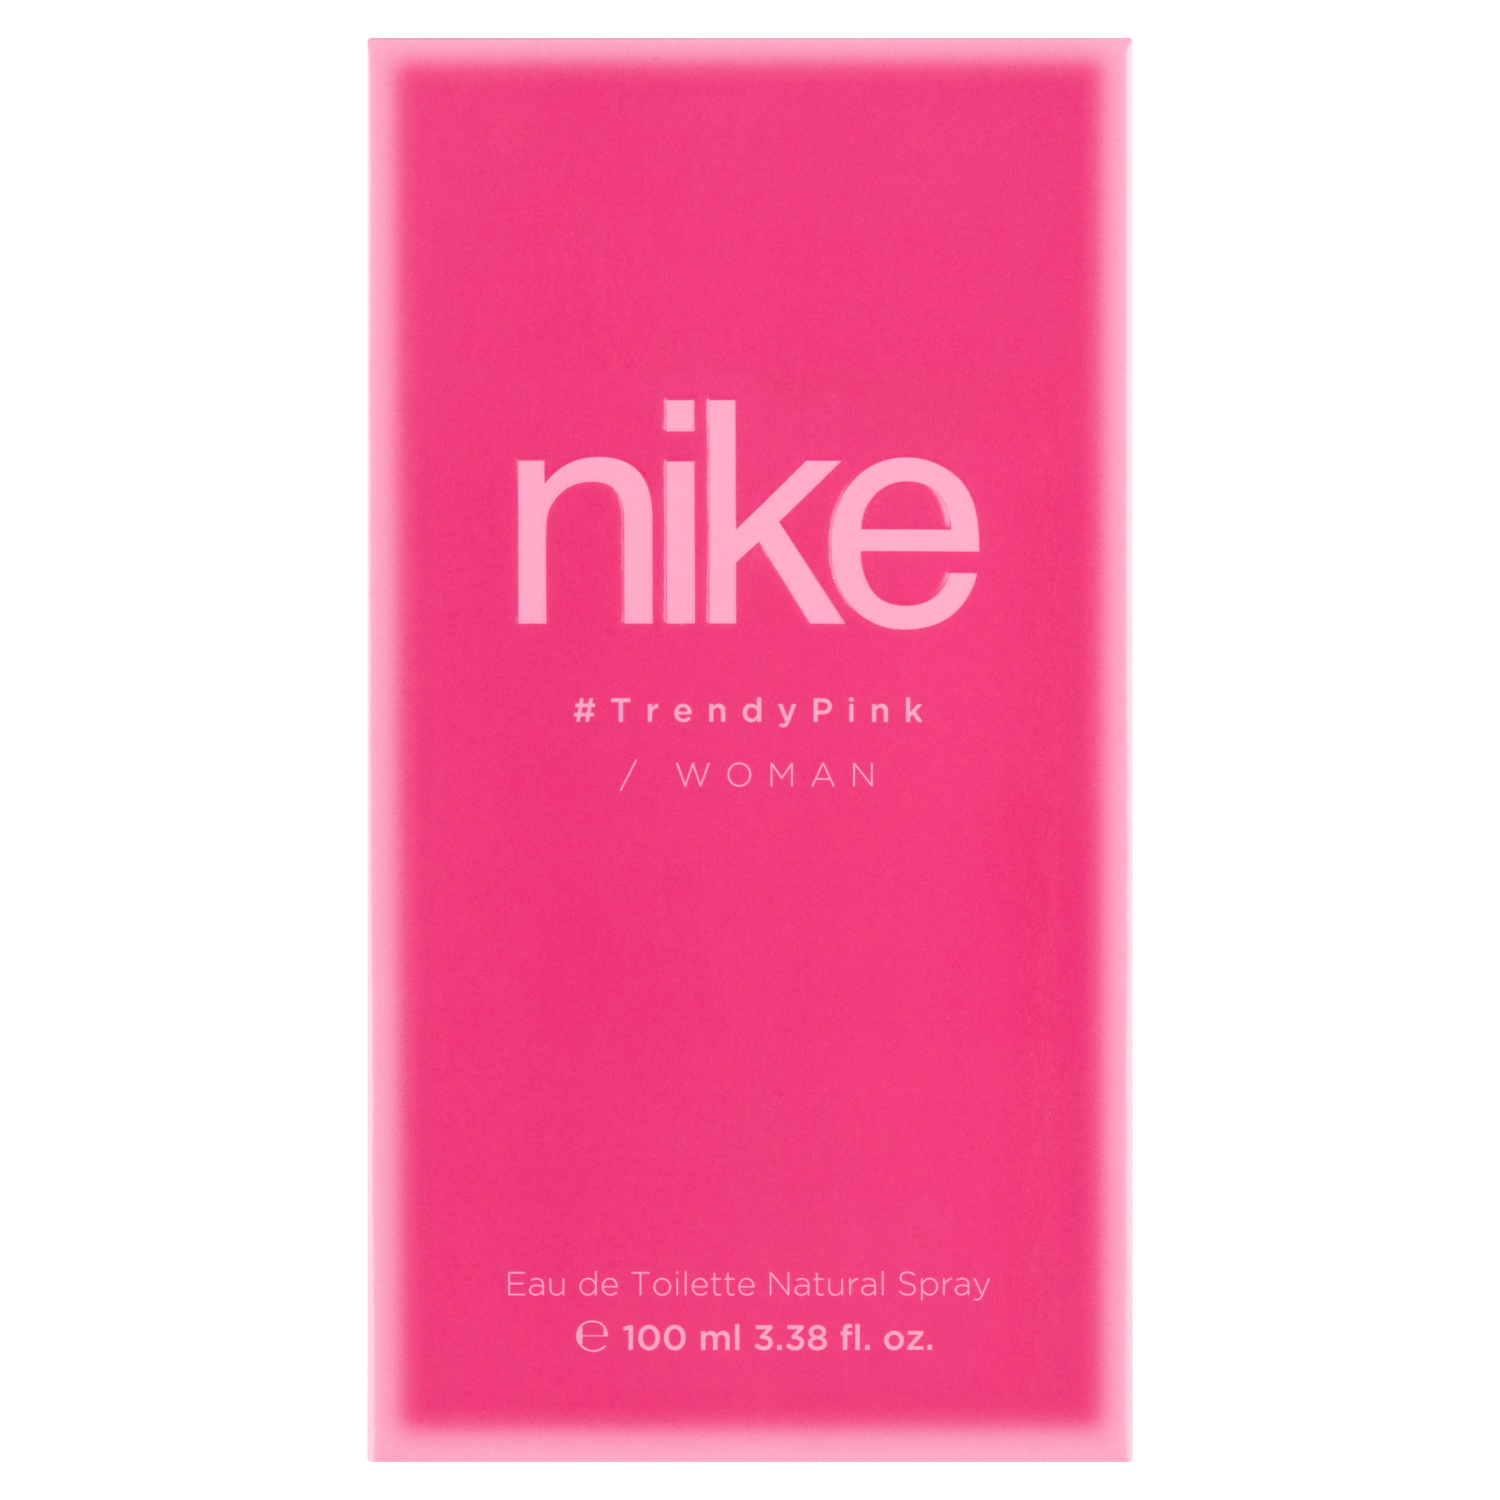 Натуральная женская туалетная вода Nike Trendy Pink, 100 мл туалетная вода penhaligon s sartorial 100 мл